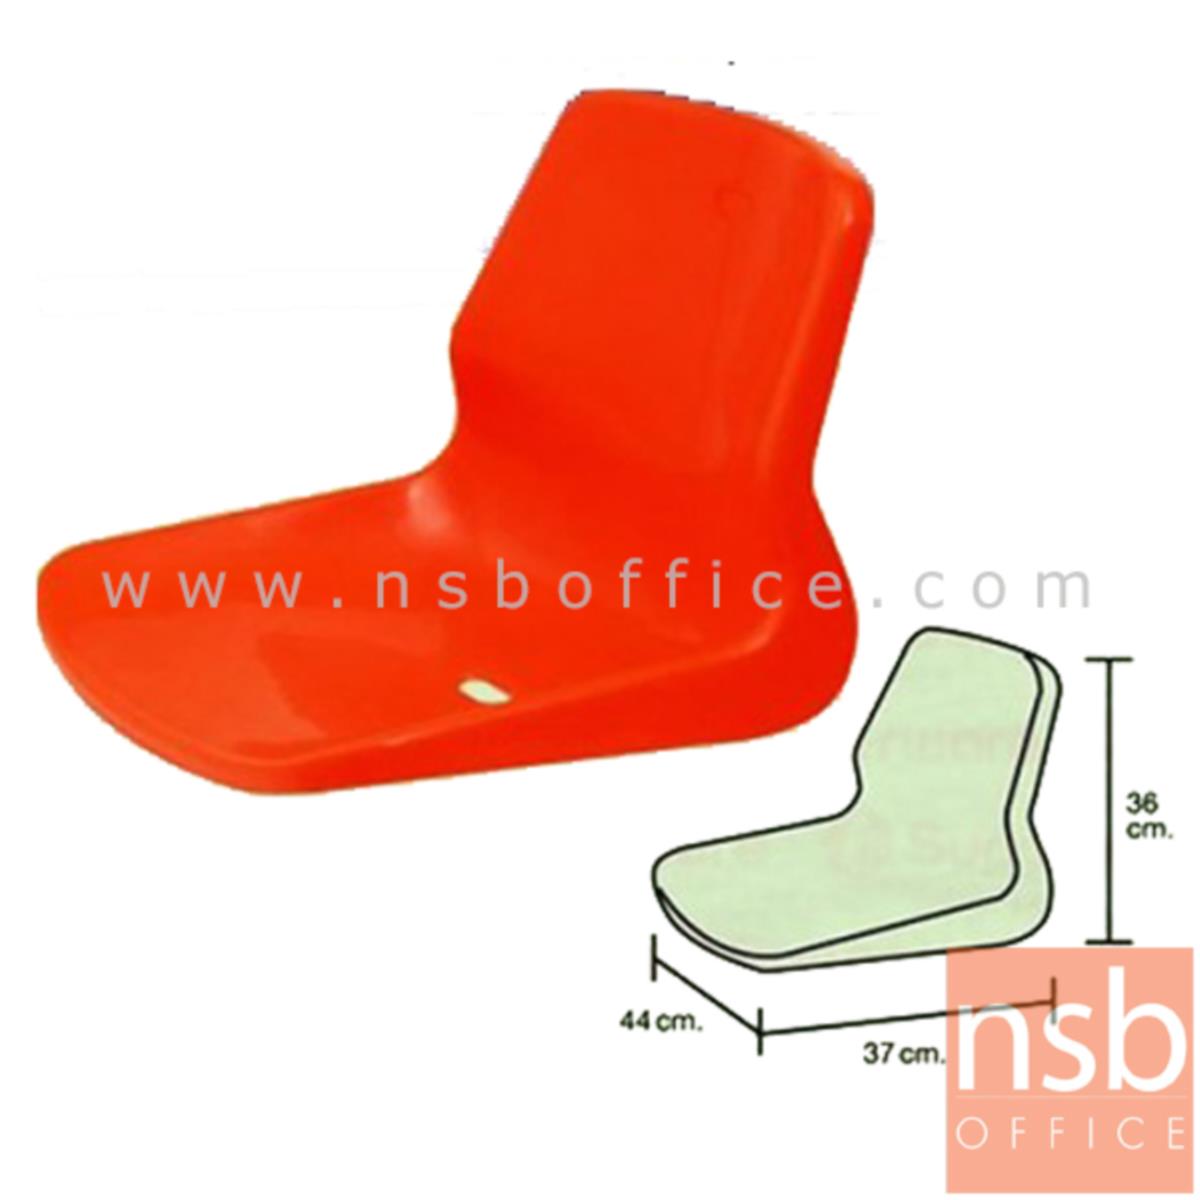 B23A084:เปลือกเก้าอี้พลาสติกโพลี่เต็มตัว   รุ่น Baxter (แบ็กซ์เตอร์)  แบบหนา ( 1 ชิ้น )